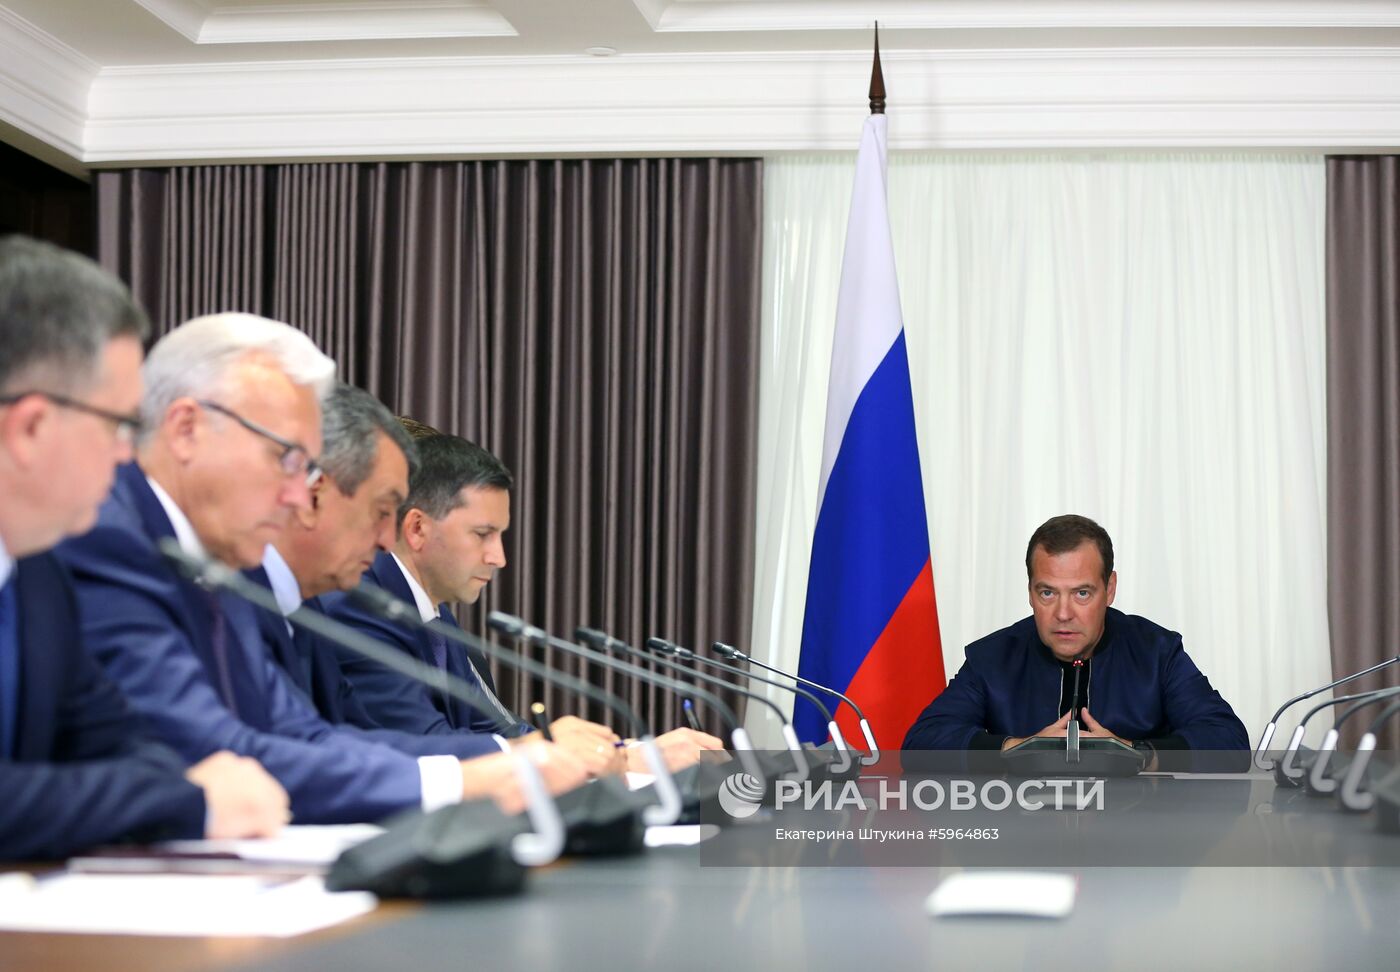 Рабочая поездка премьер-министра РФ Д. Медведева в Красноярск